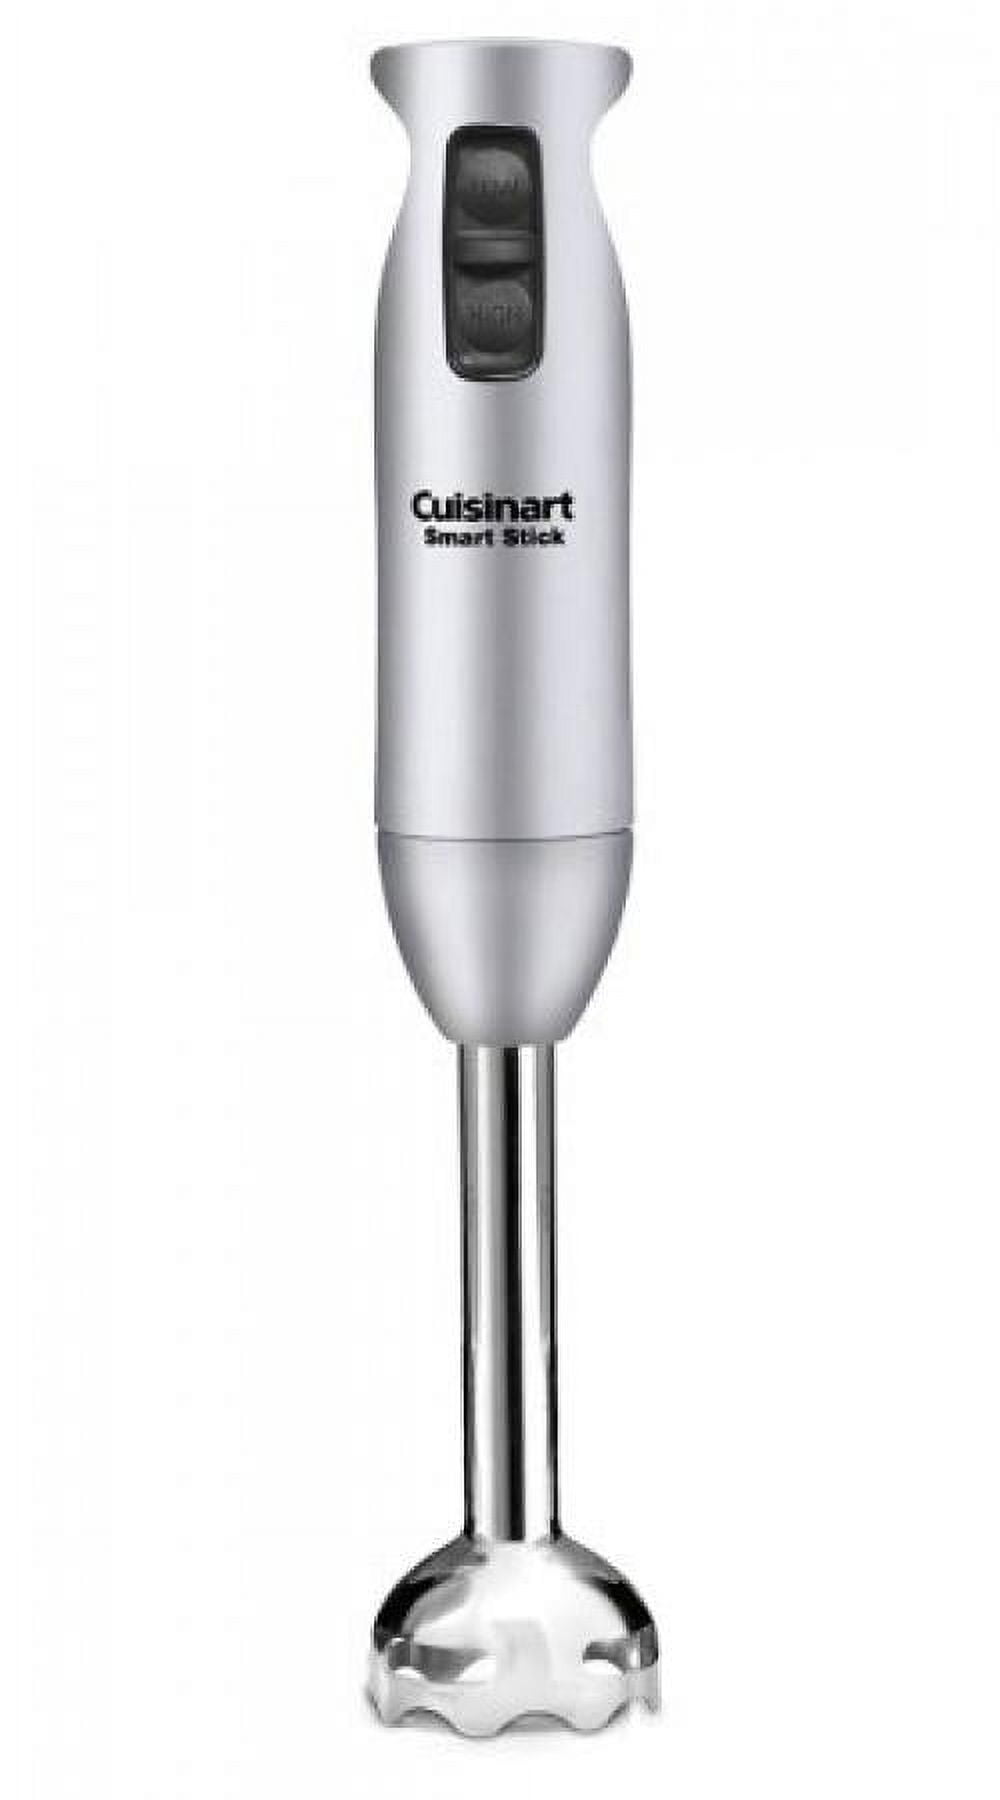 Cuisinart Smart Stick Two Speed Hand Blender CSB-75WM 200 Watts